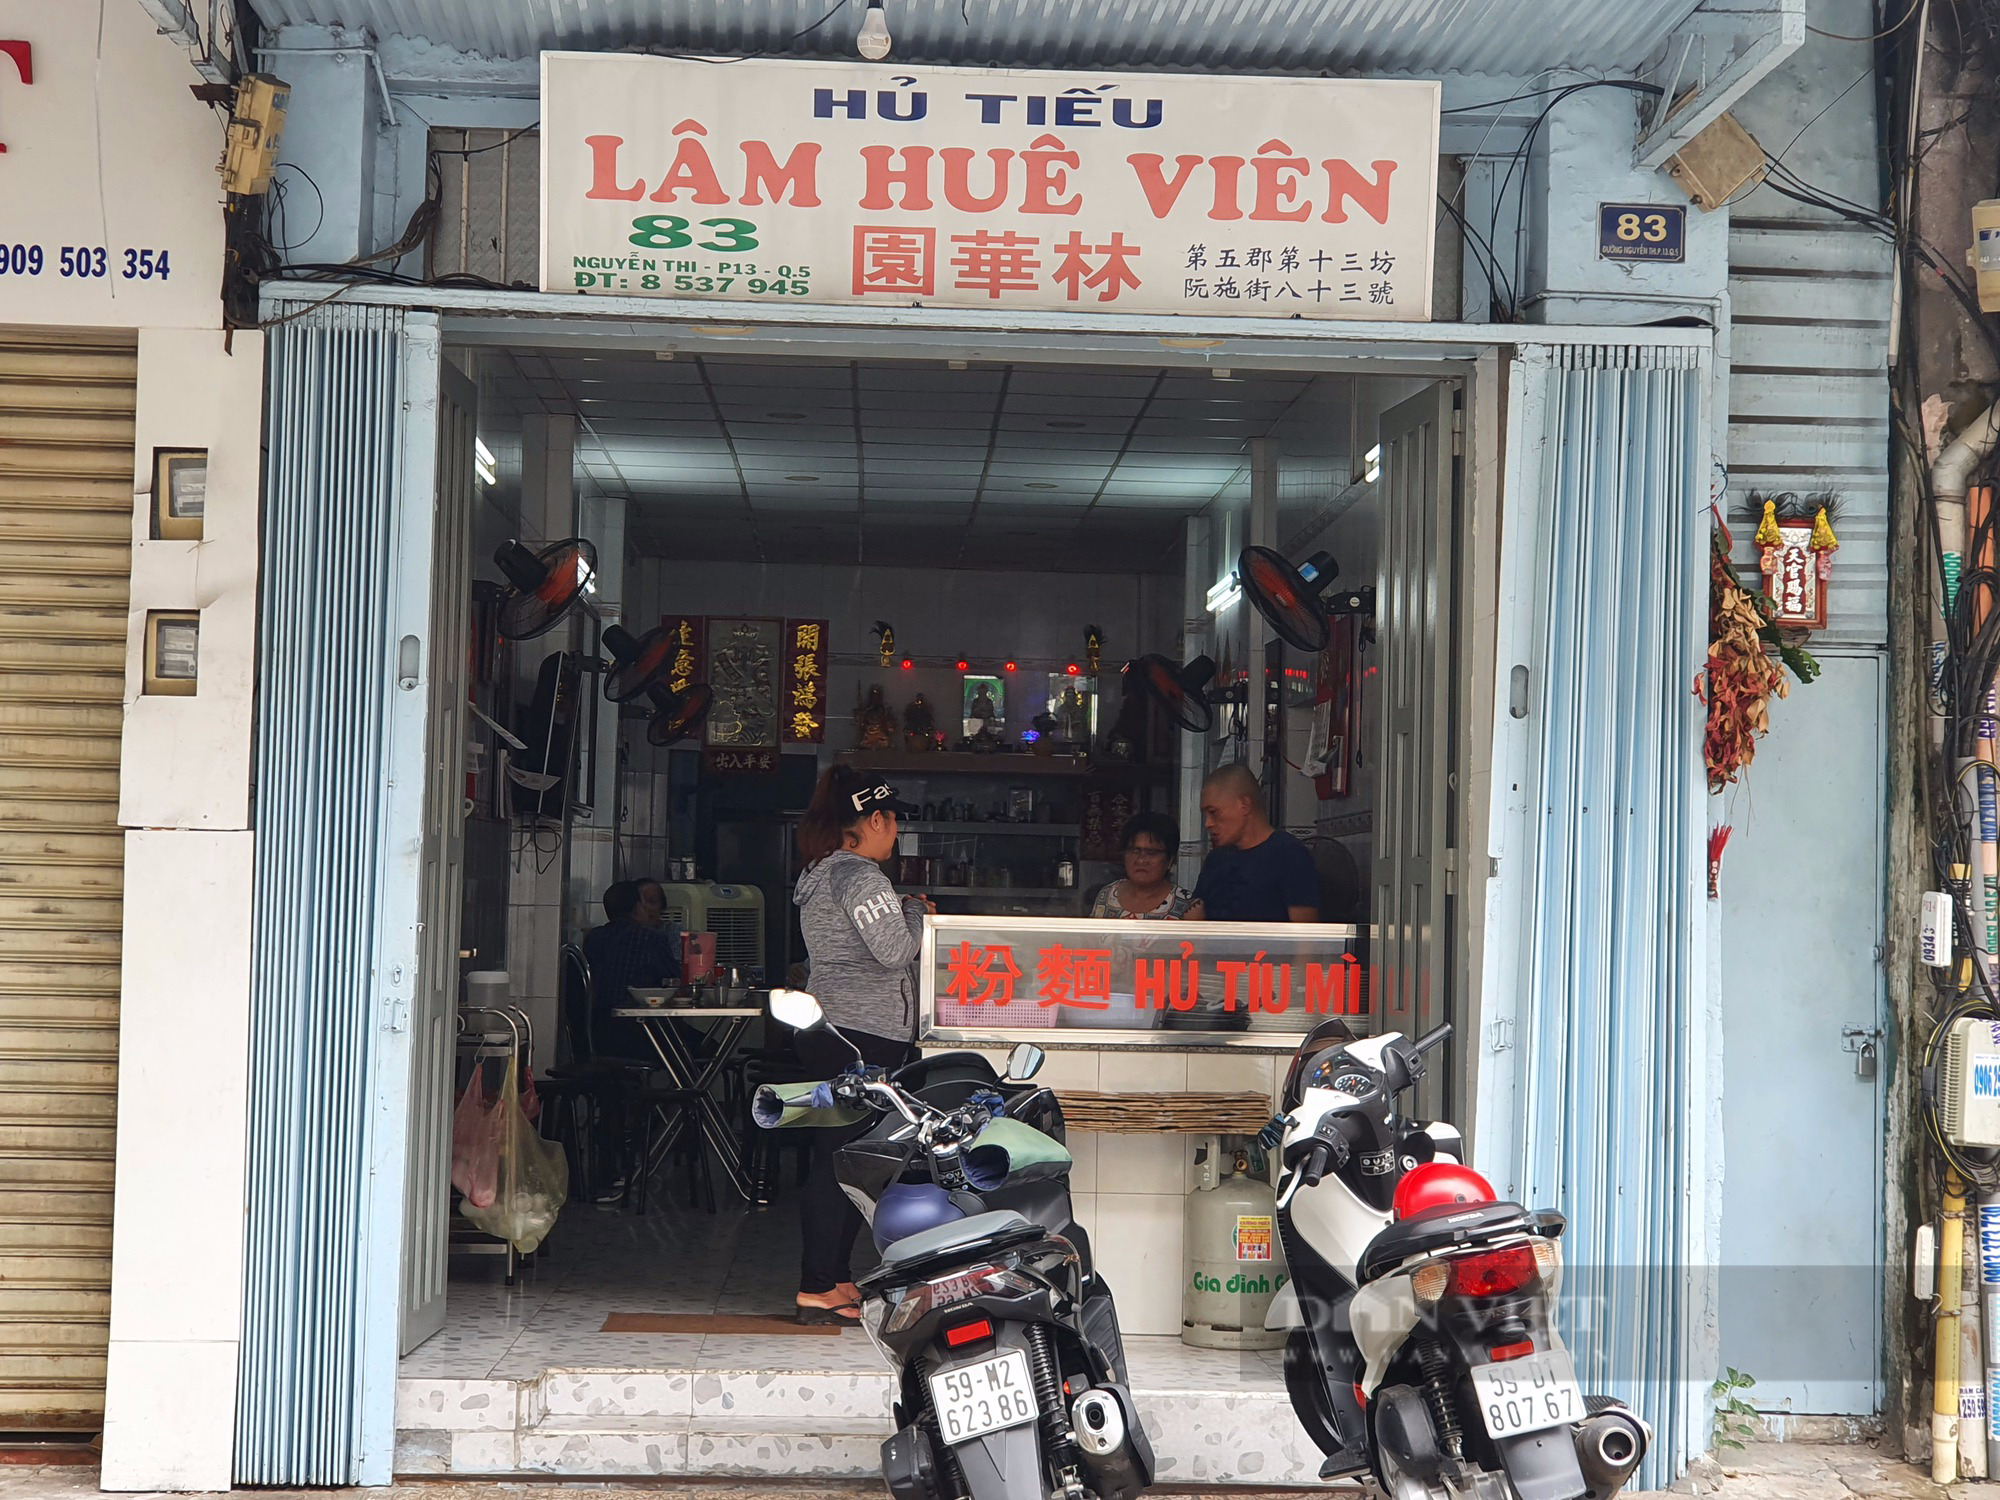 Sài Gòn quán: Tiệm nước Lâm Huê Viên bên hông Bưu điện Chợ Lớn, tô hủ tiếu mì tròn chẵn 100.000 đồng - Ảnh 1.